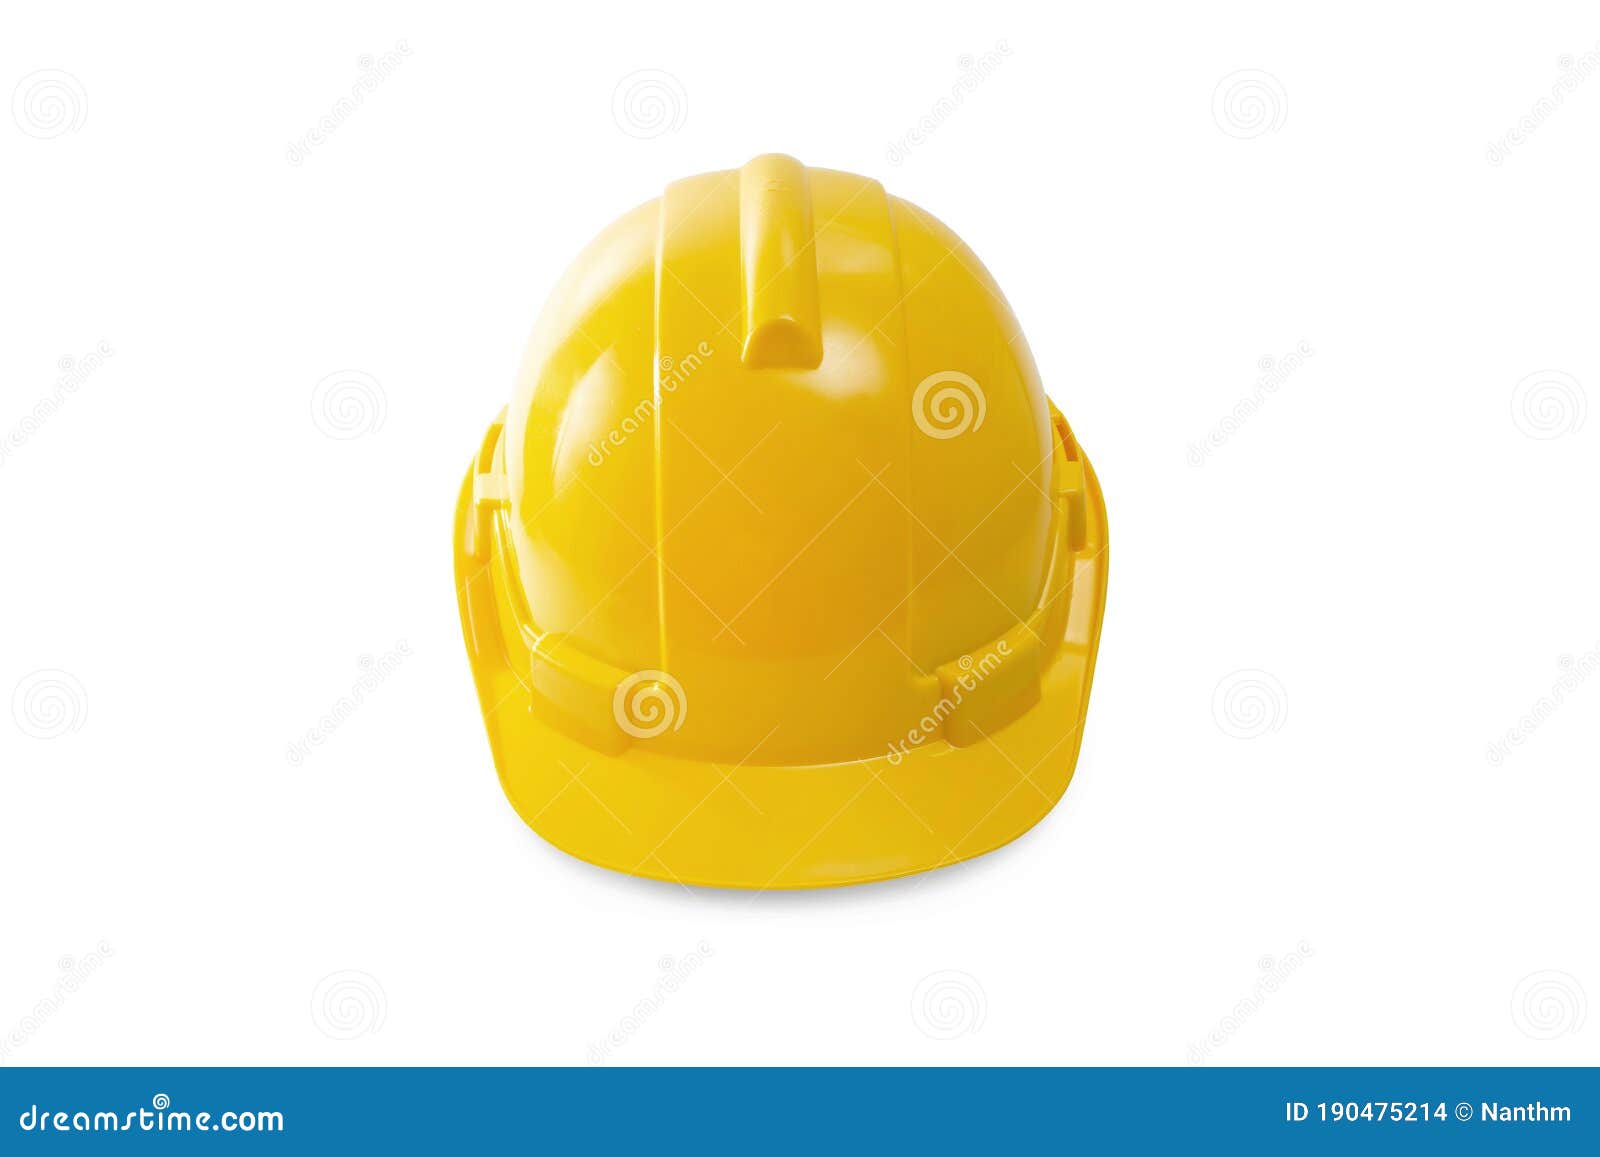 Silverline Yellow Safety Hard Hat 306429